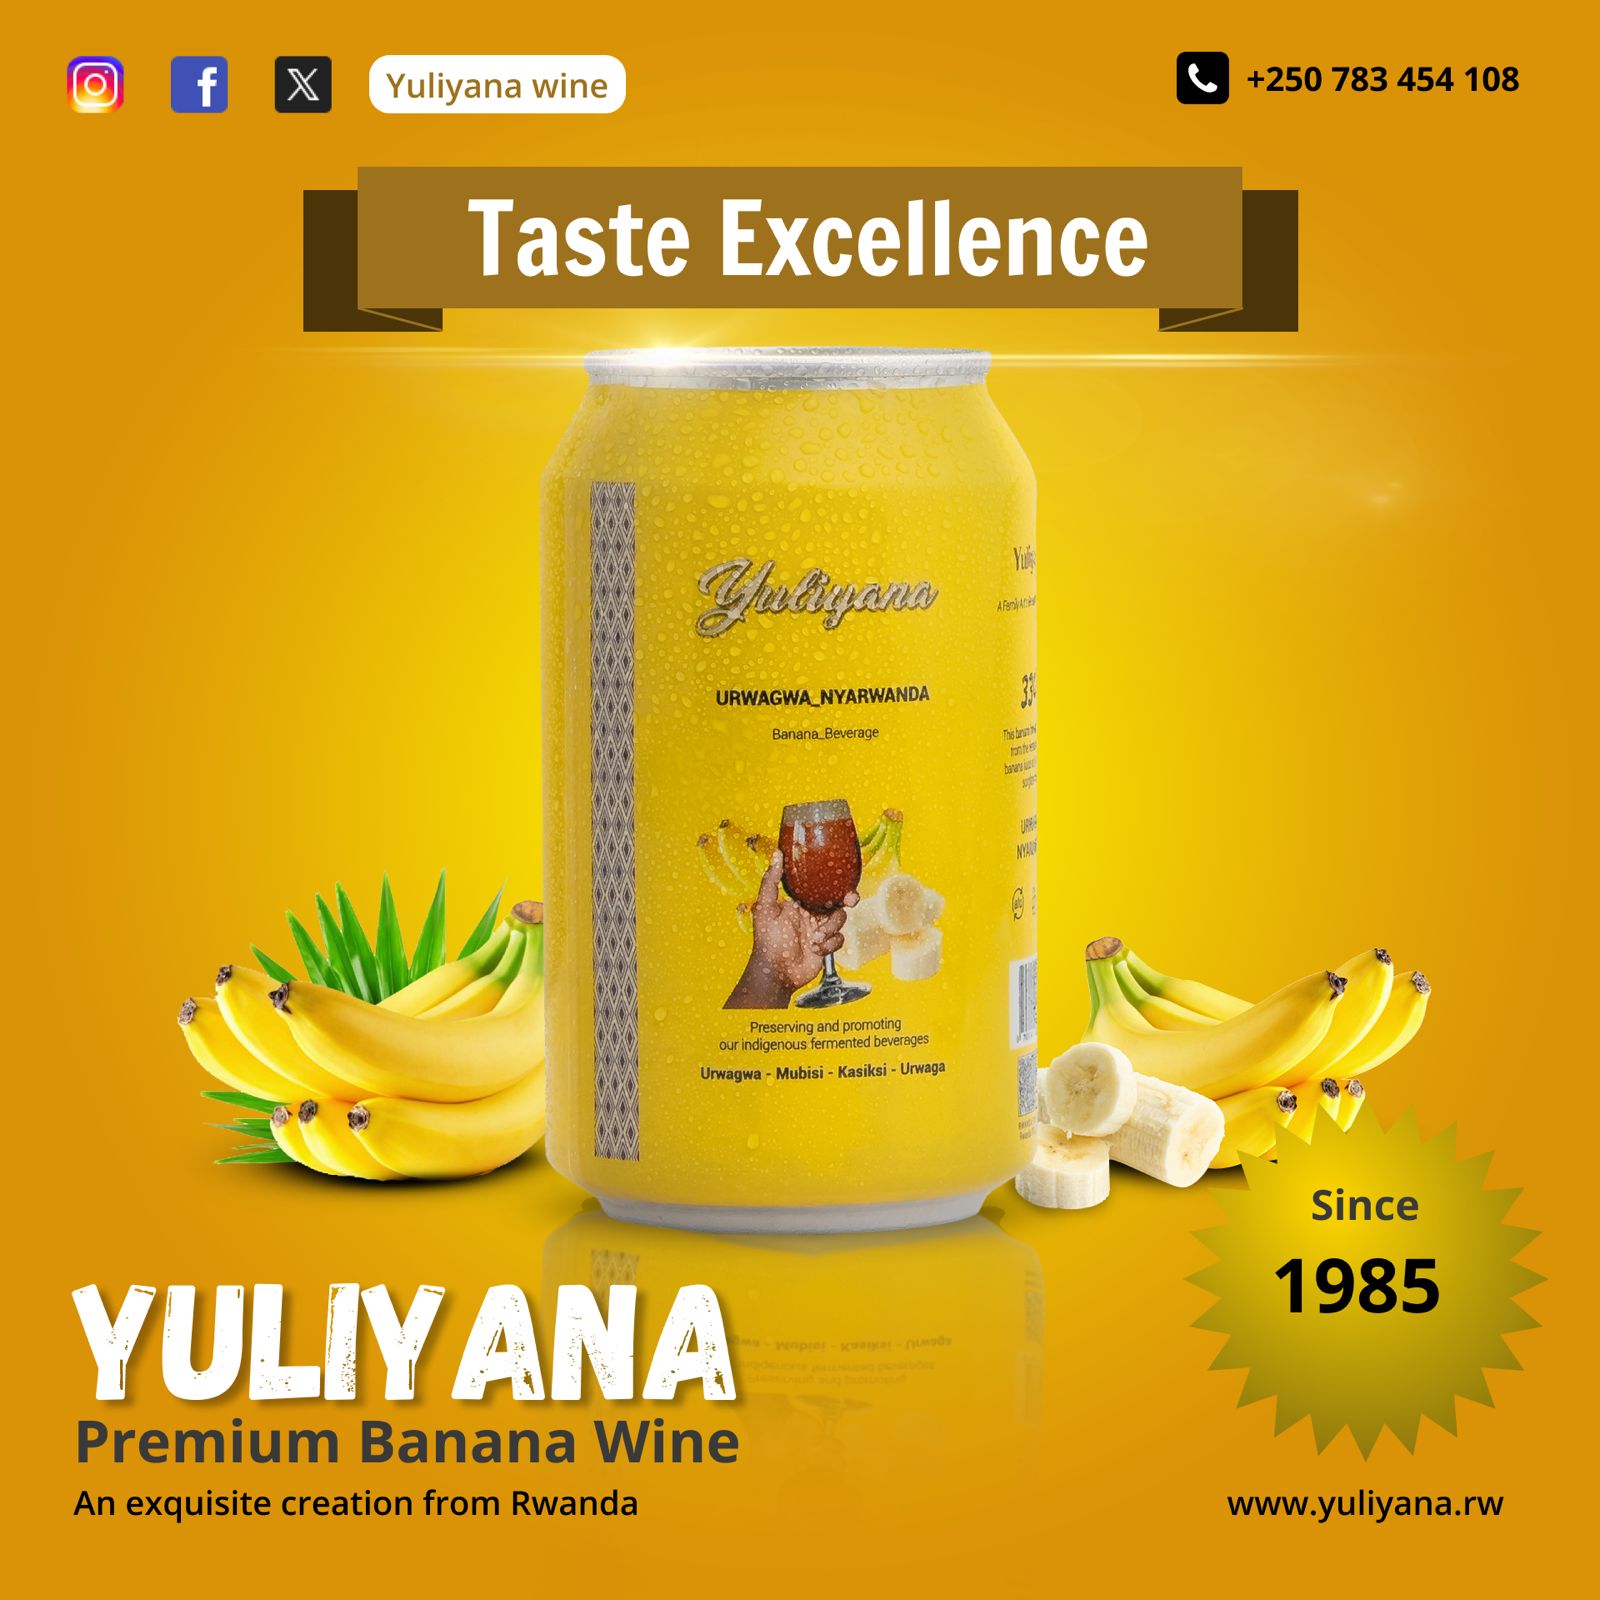 Yuliyana Premium Banana Wine